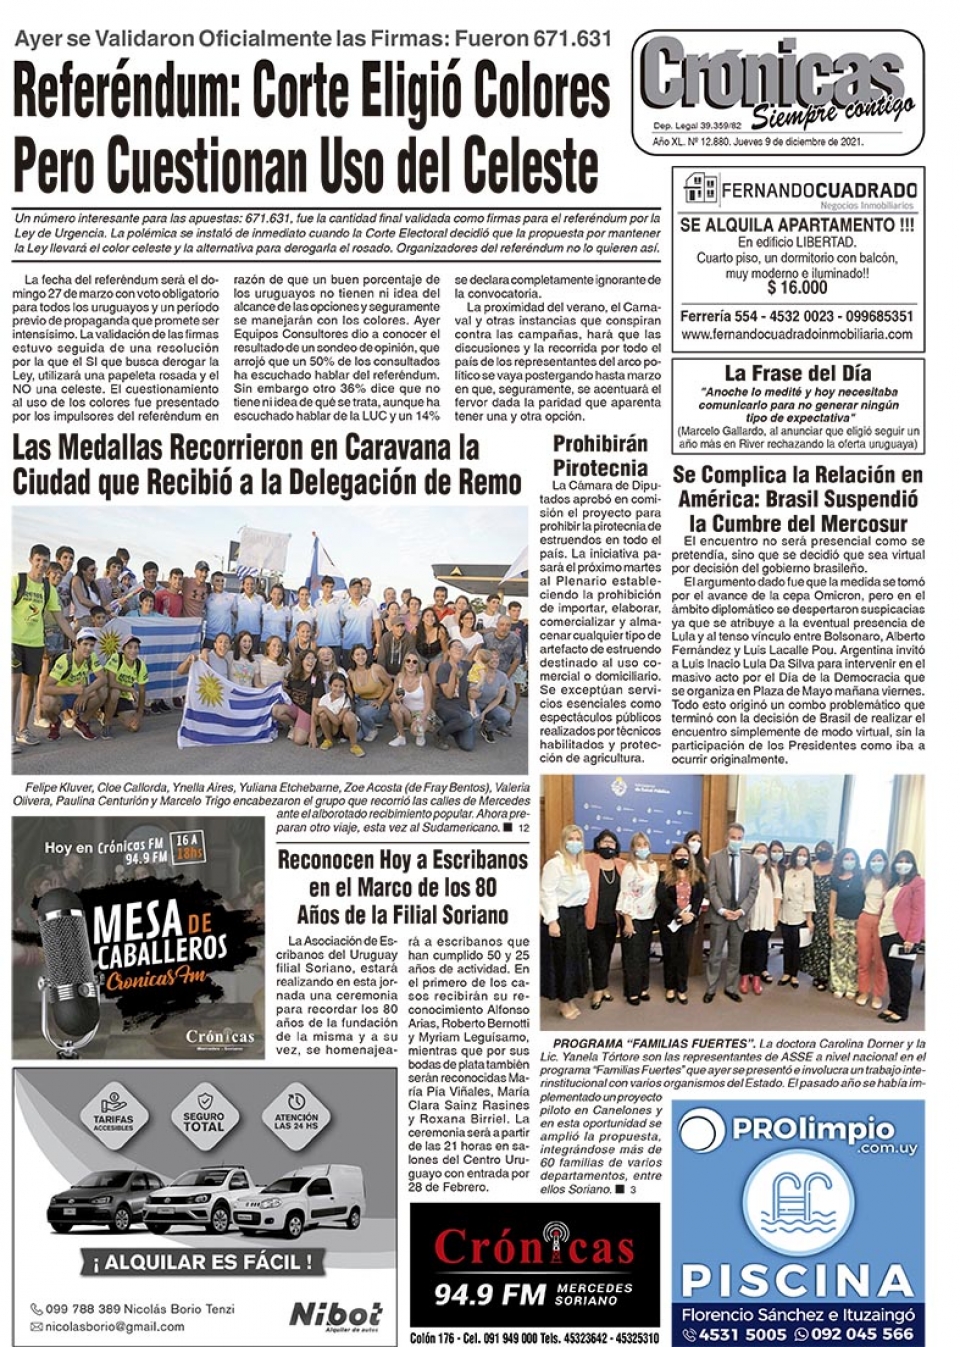 Diario Crónicas de Mercedes, Soriano, Uruguay